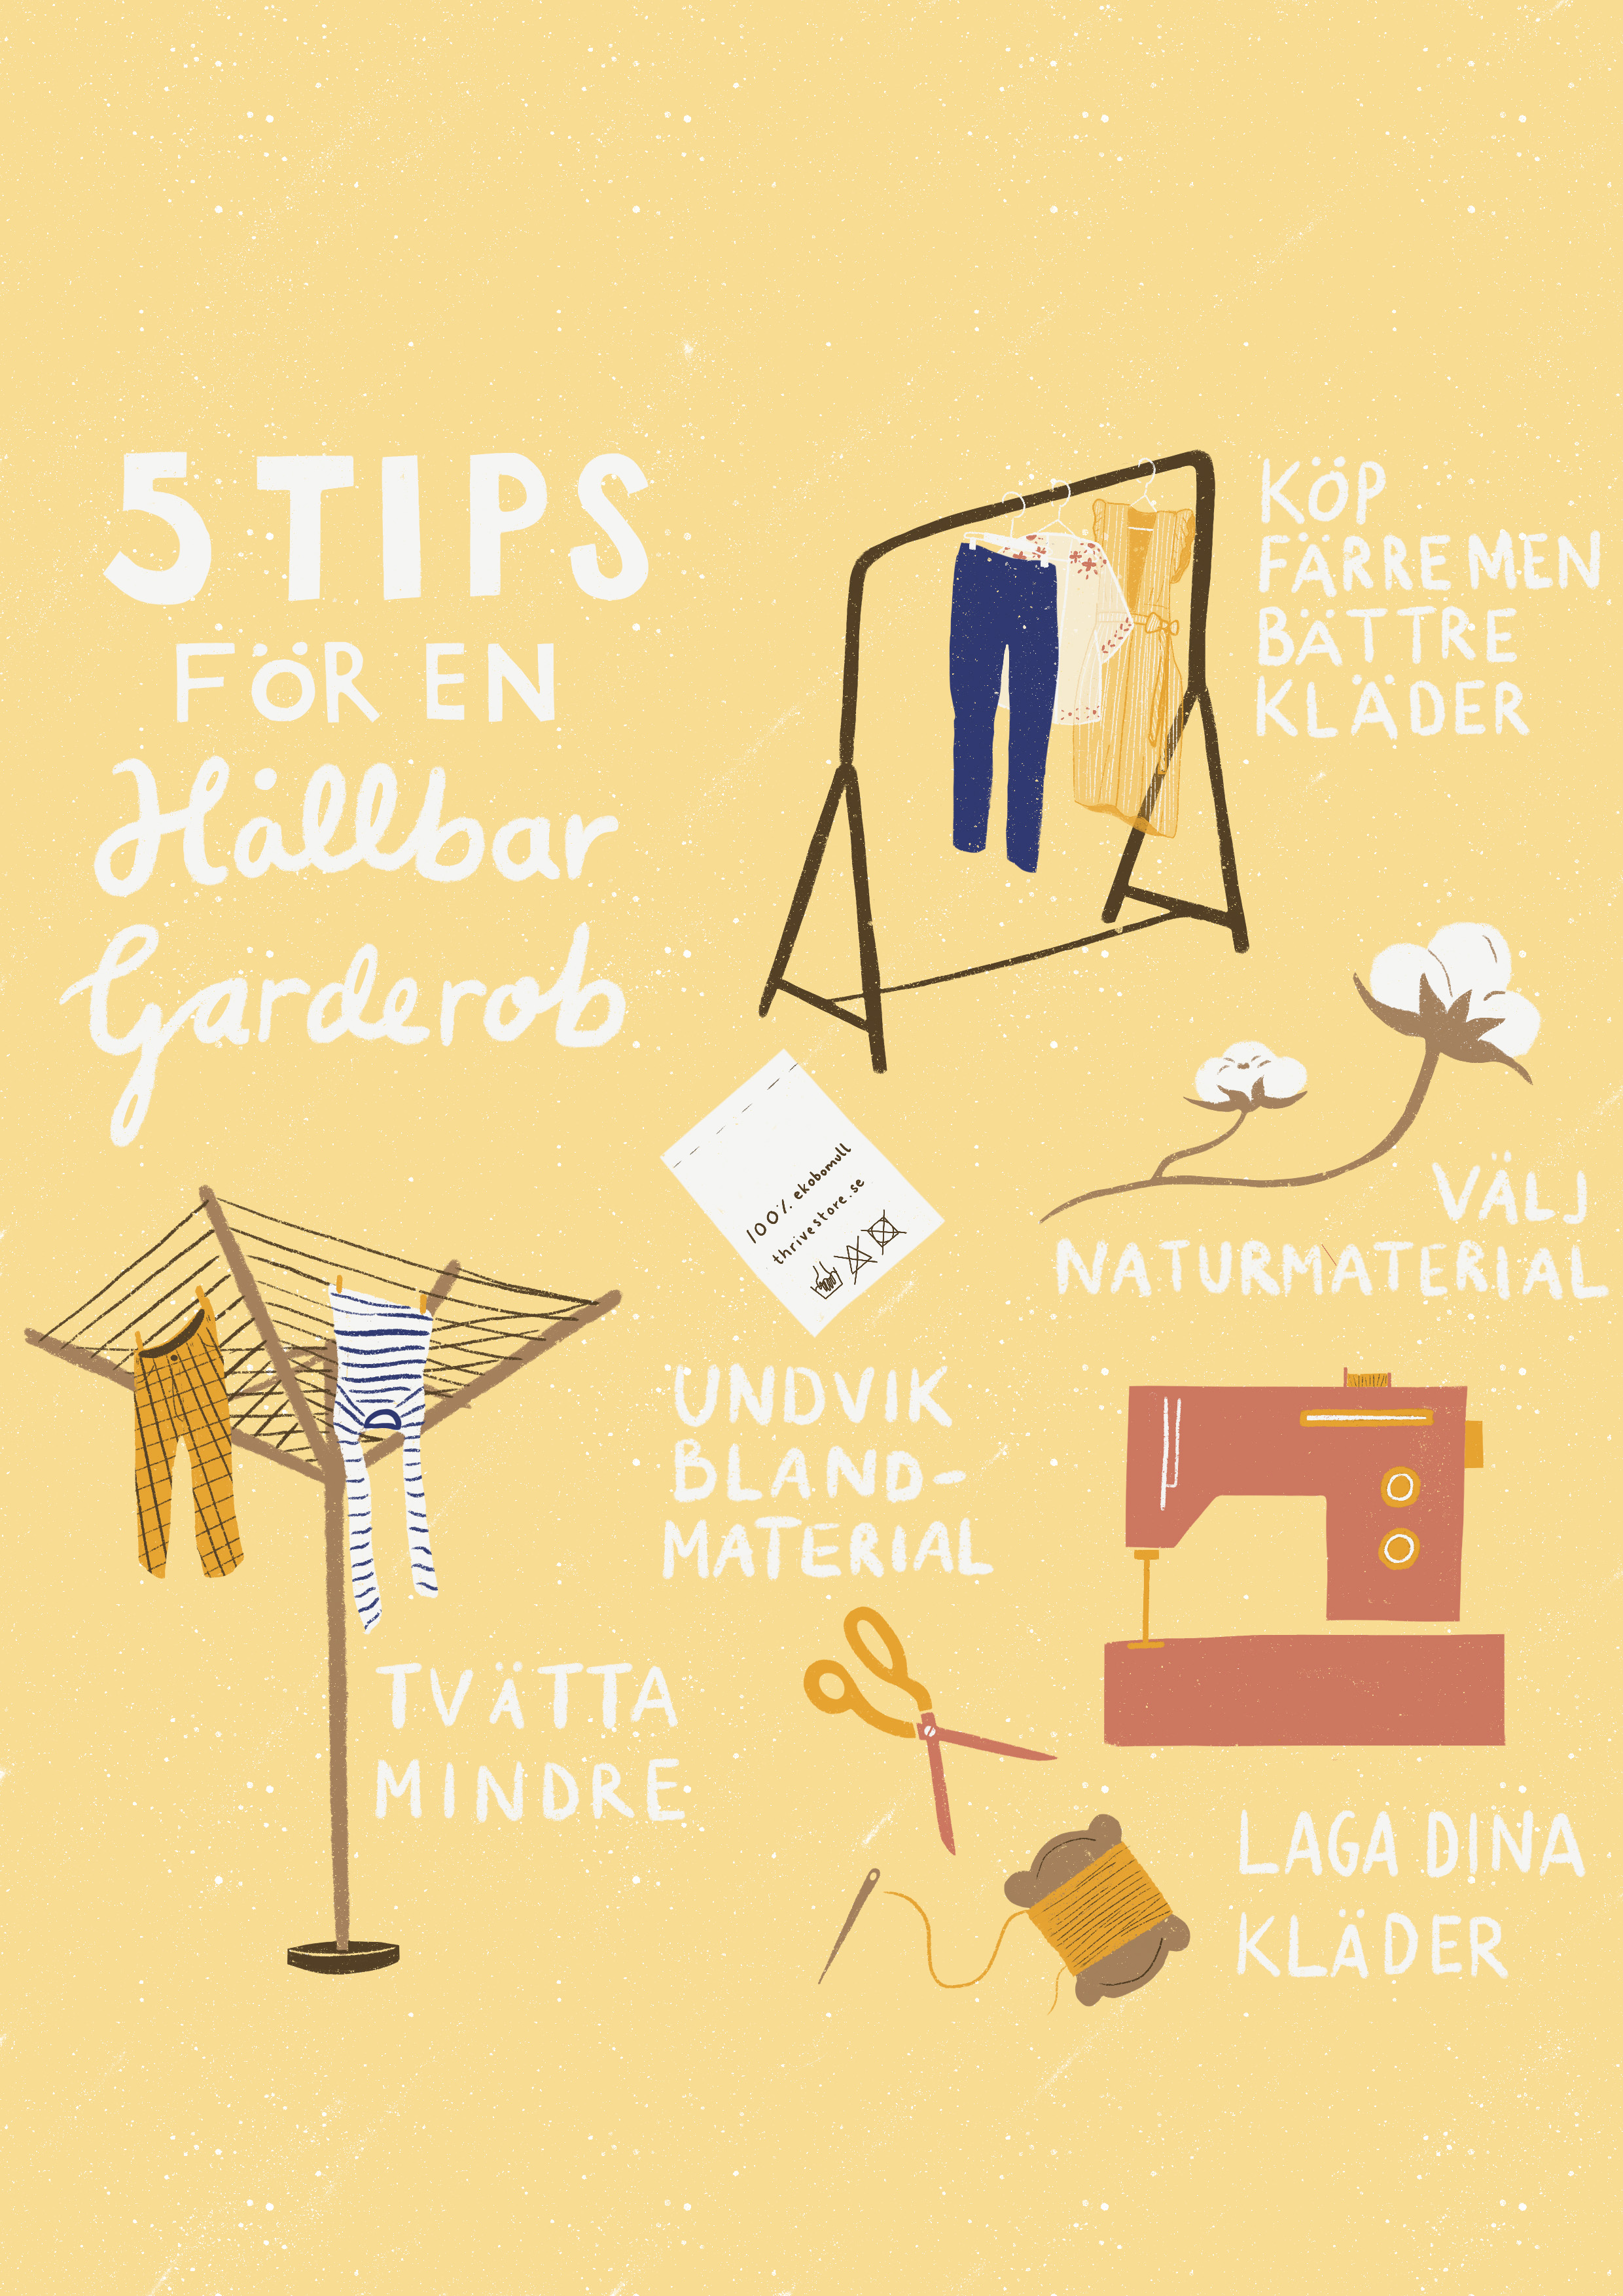 Informativ illustration med fem tips för att skapa en hållbar garderob, t.ex tvätta mindre, laga dina kläder och välj naturmaterial.